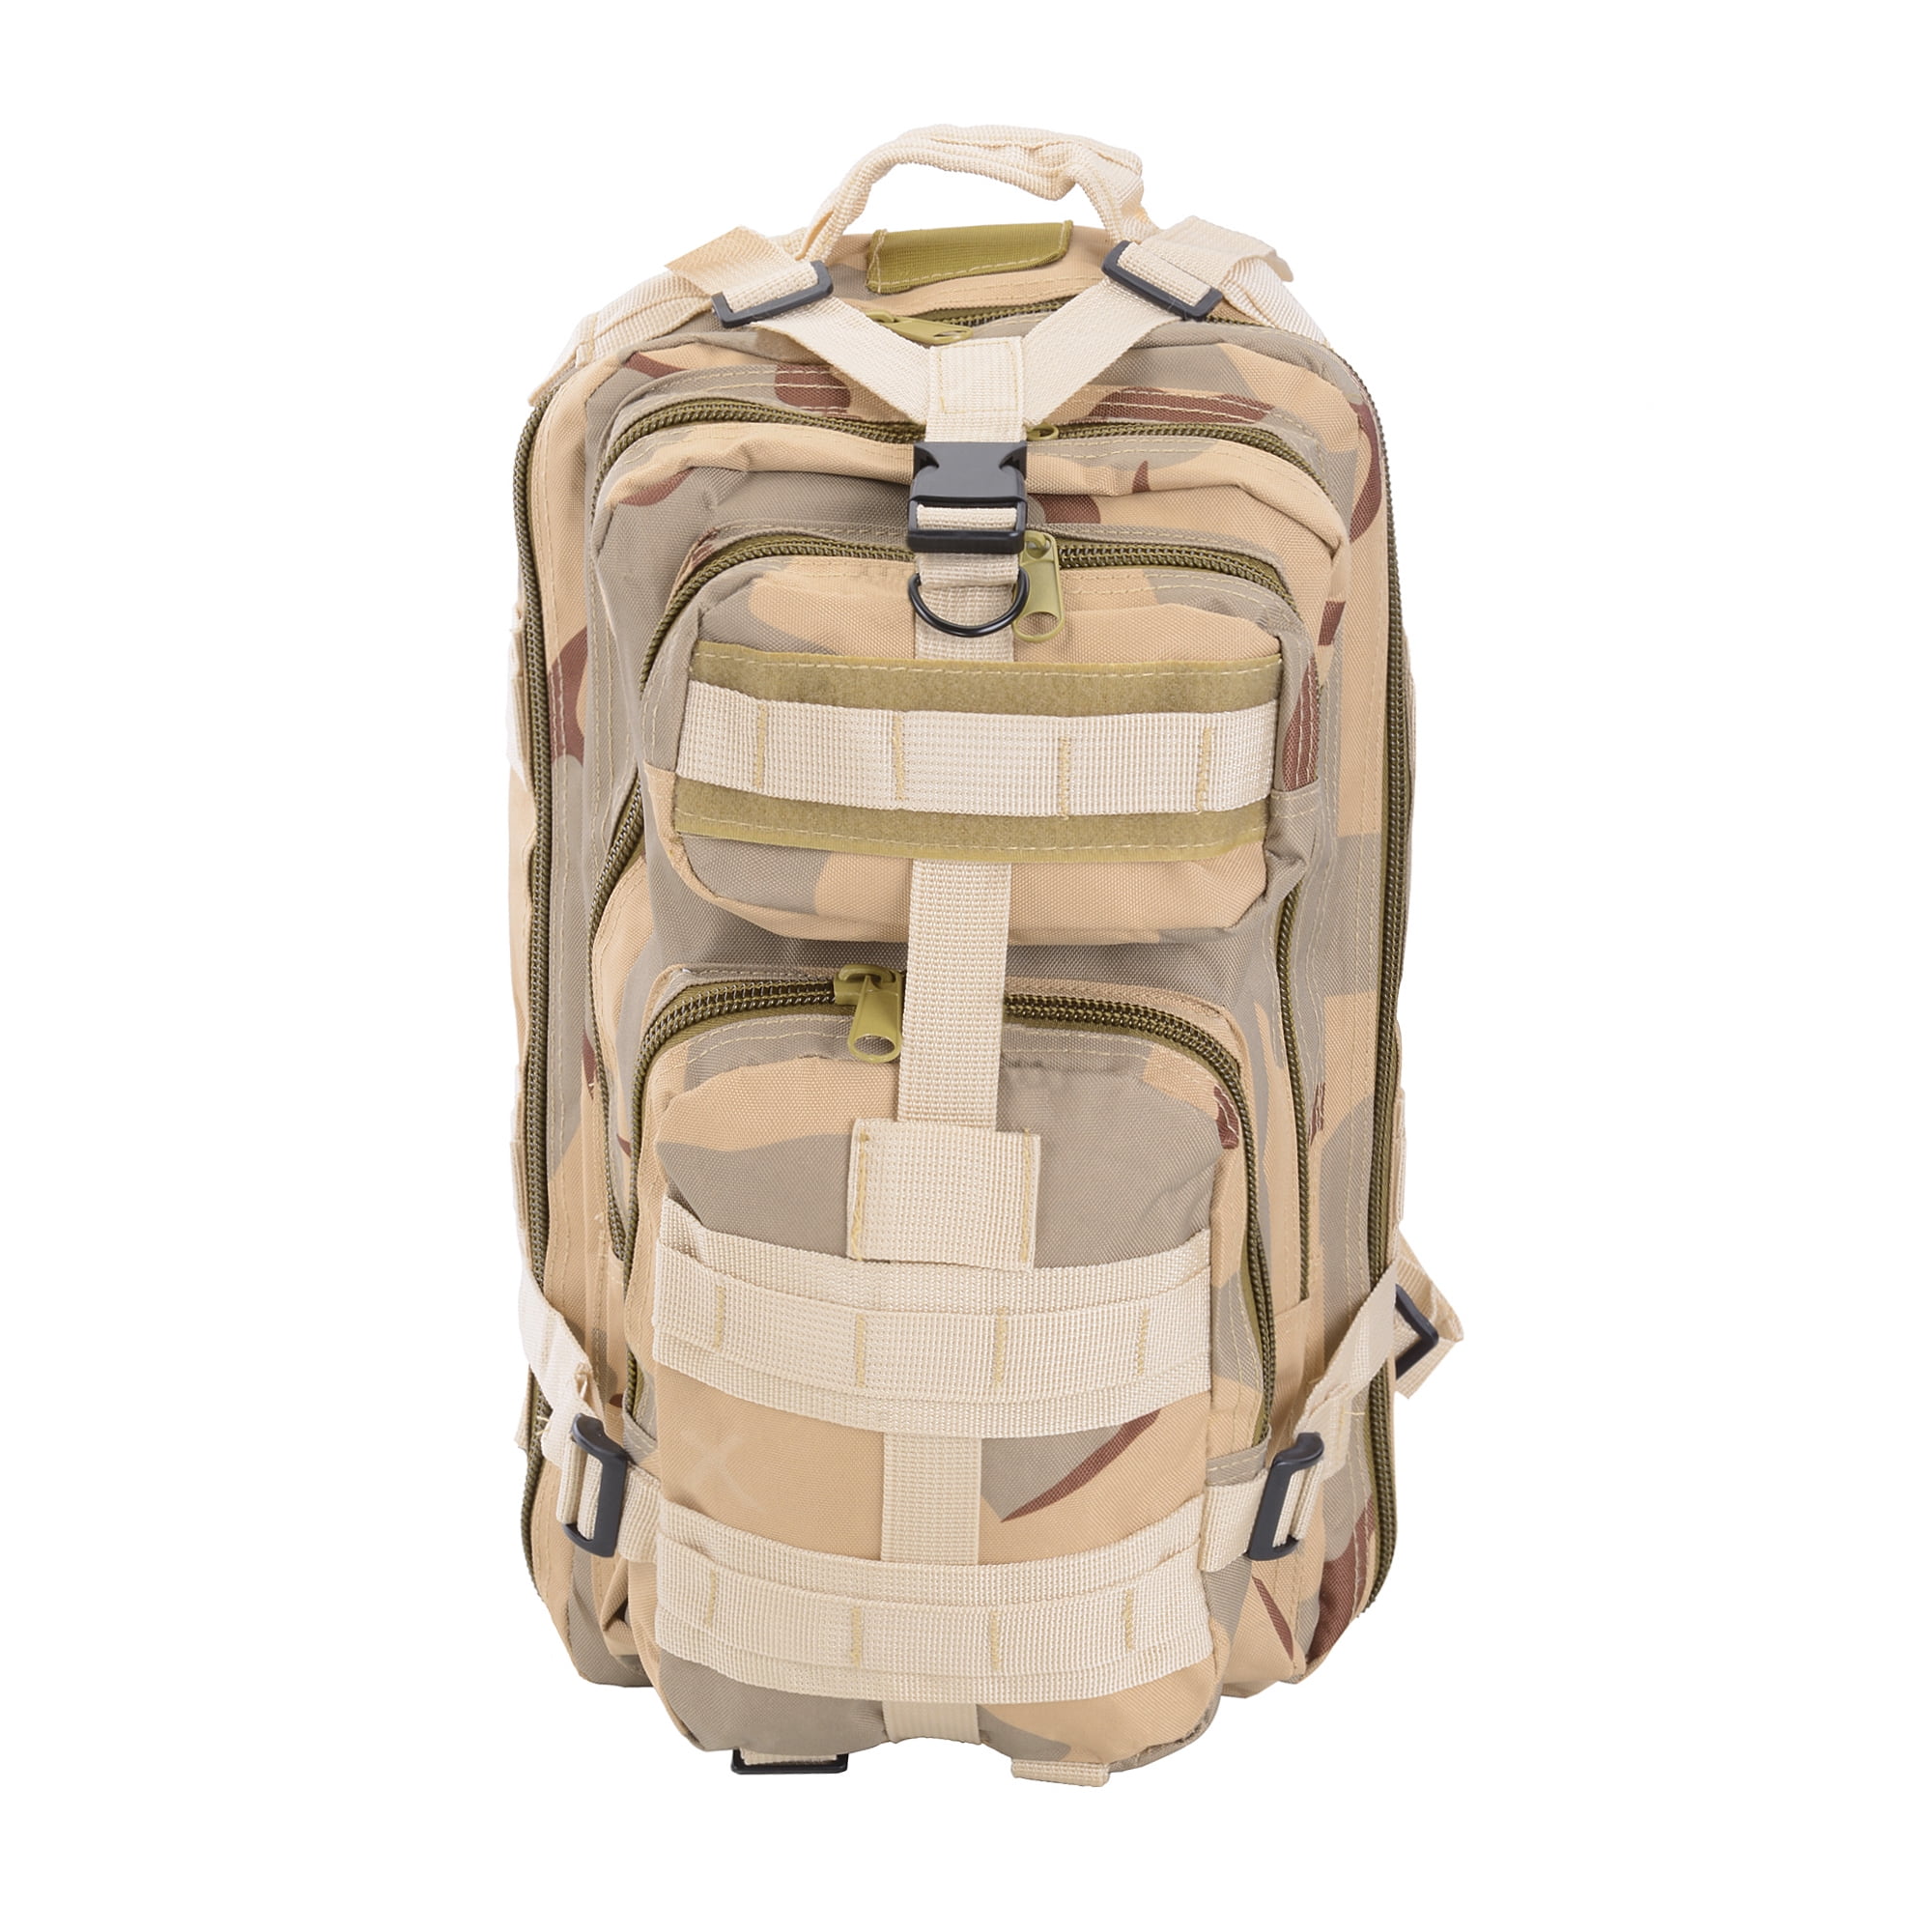 Vintage Canvas Sport Backpack Rucksack Satchel Travel Hiking School Bag-USA 